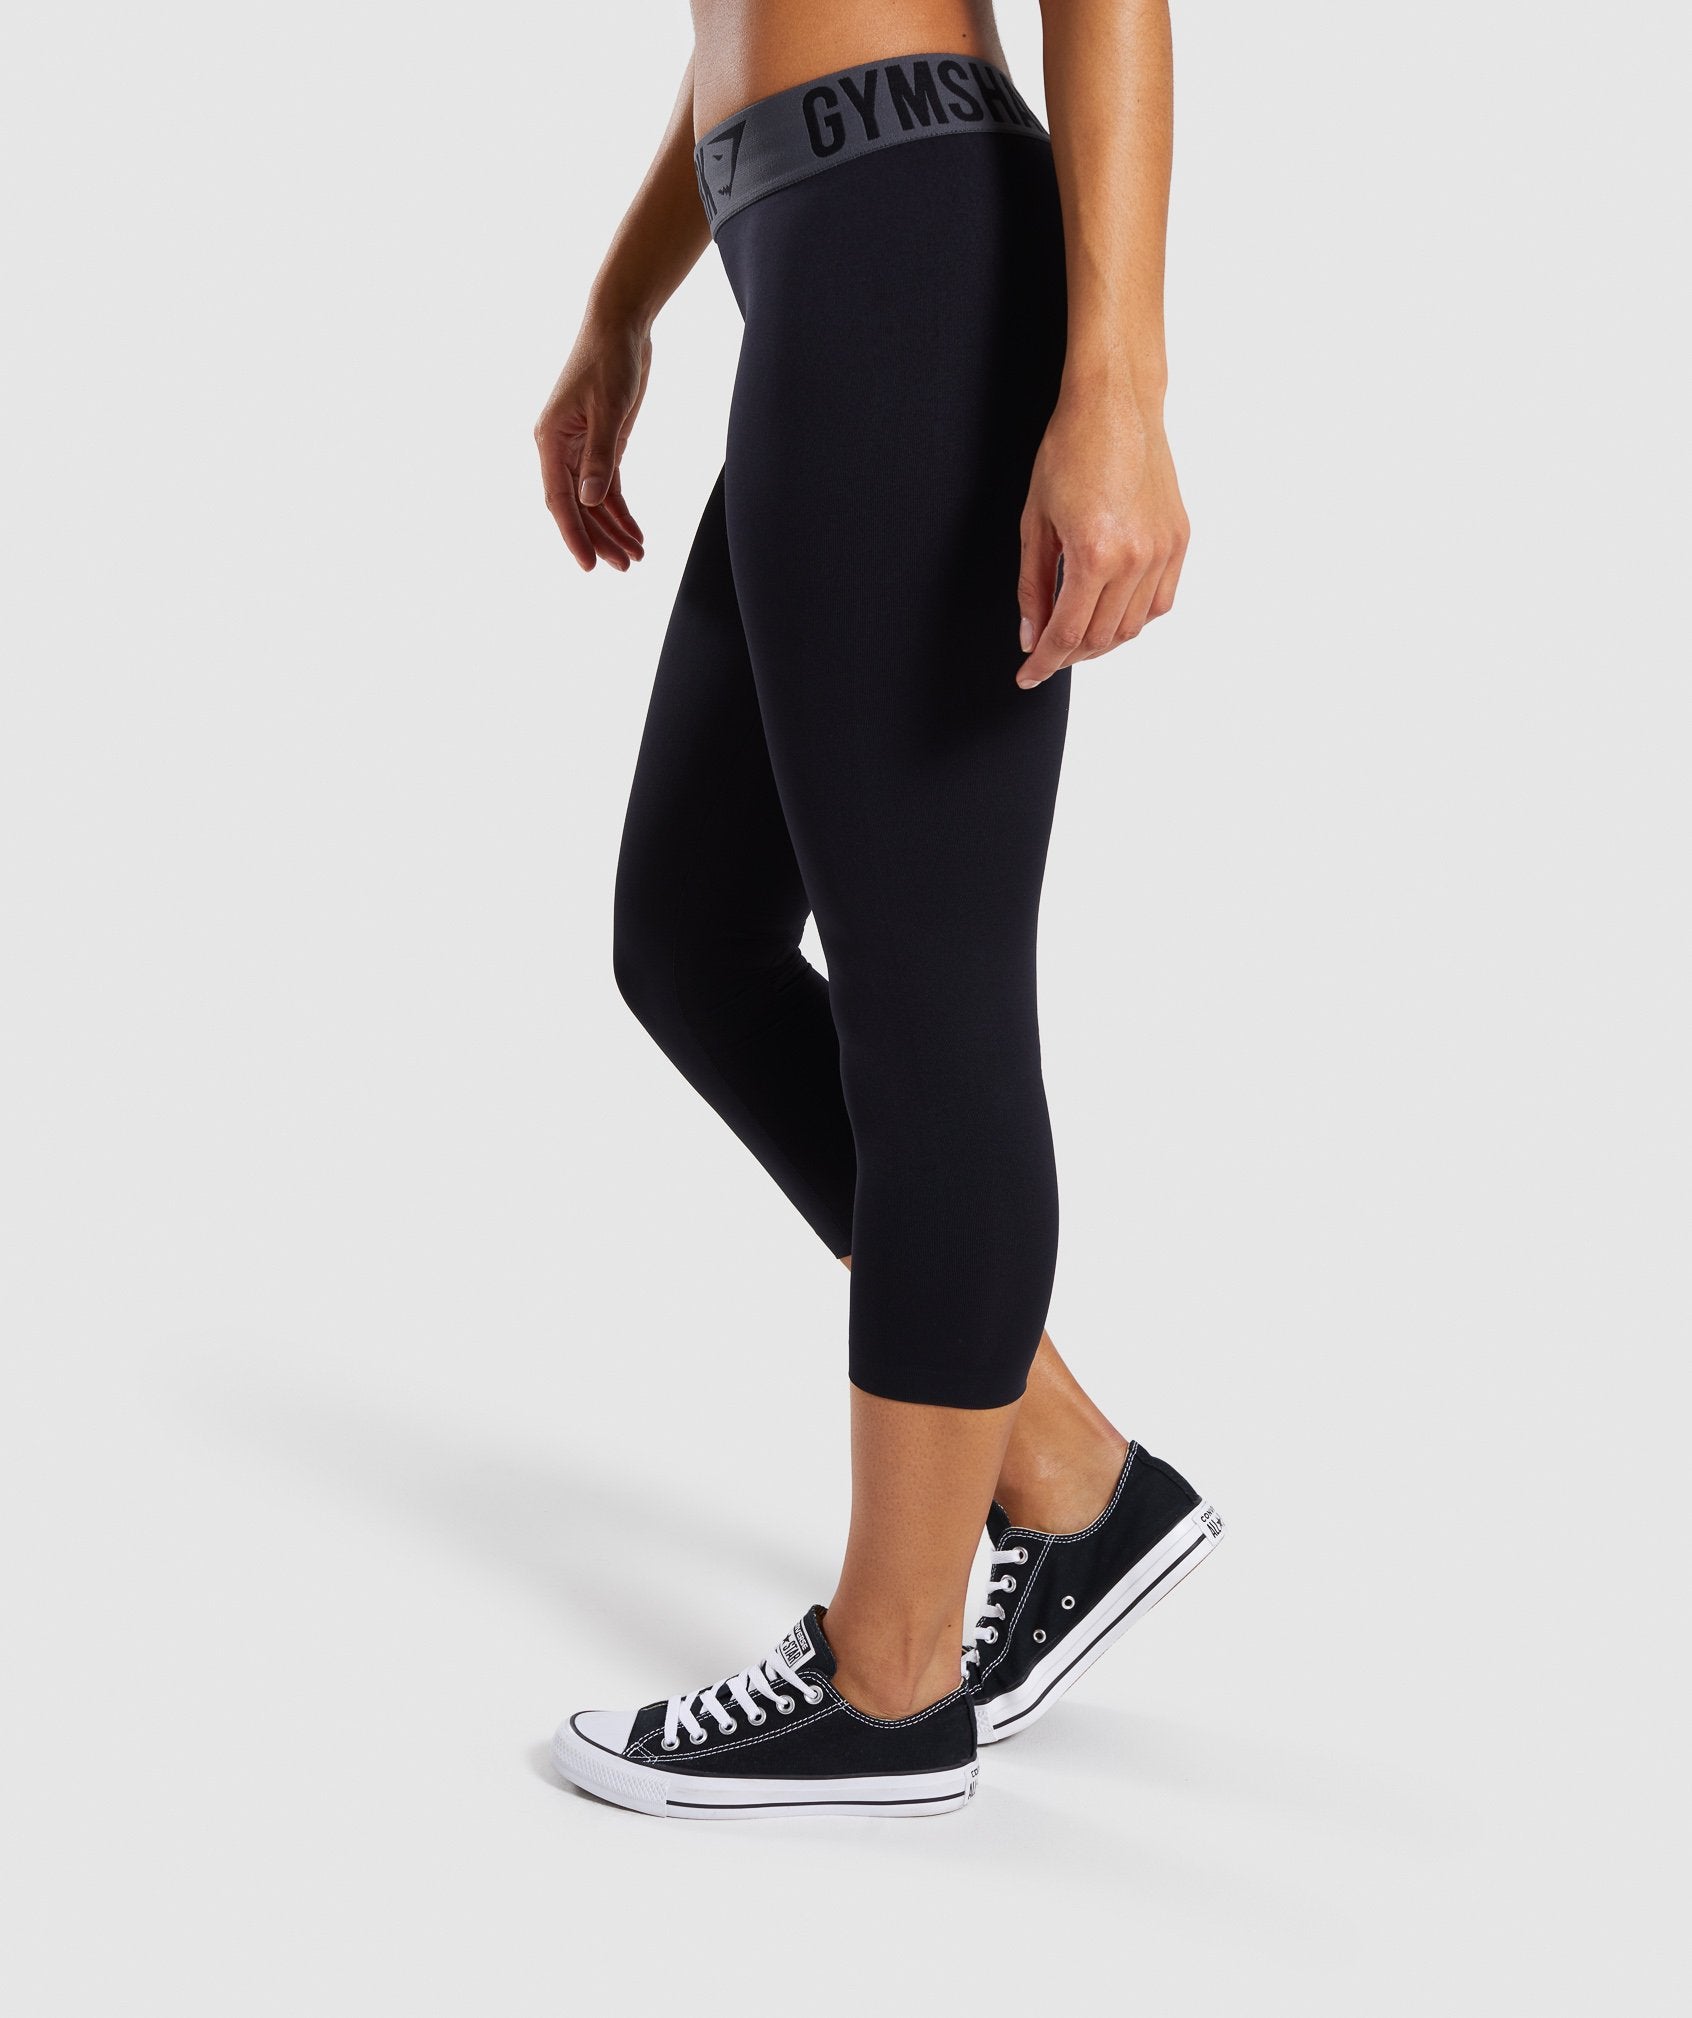 Gymshark Fit Seamless Cropped Leggings - Black/White